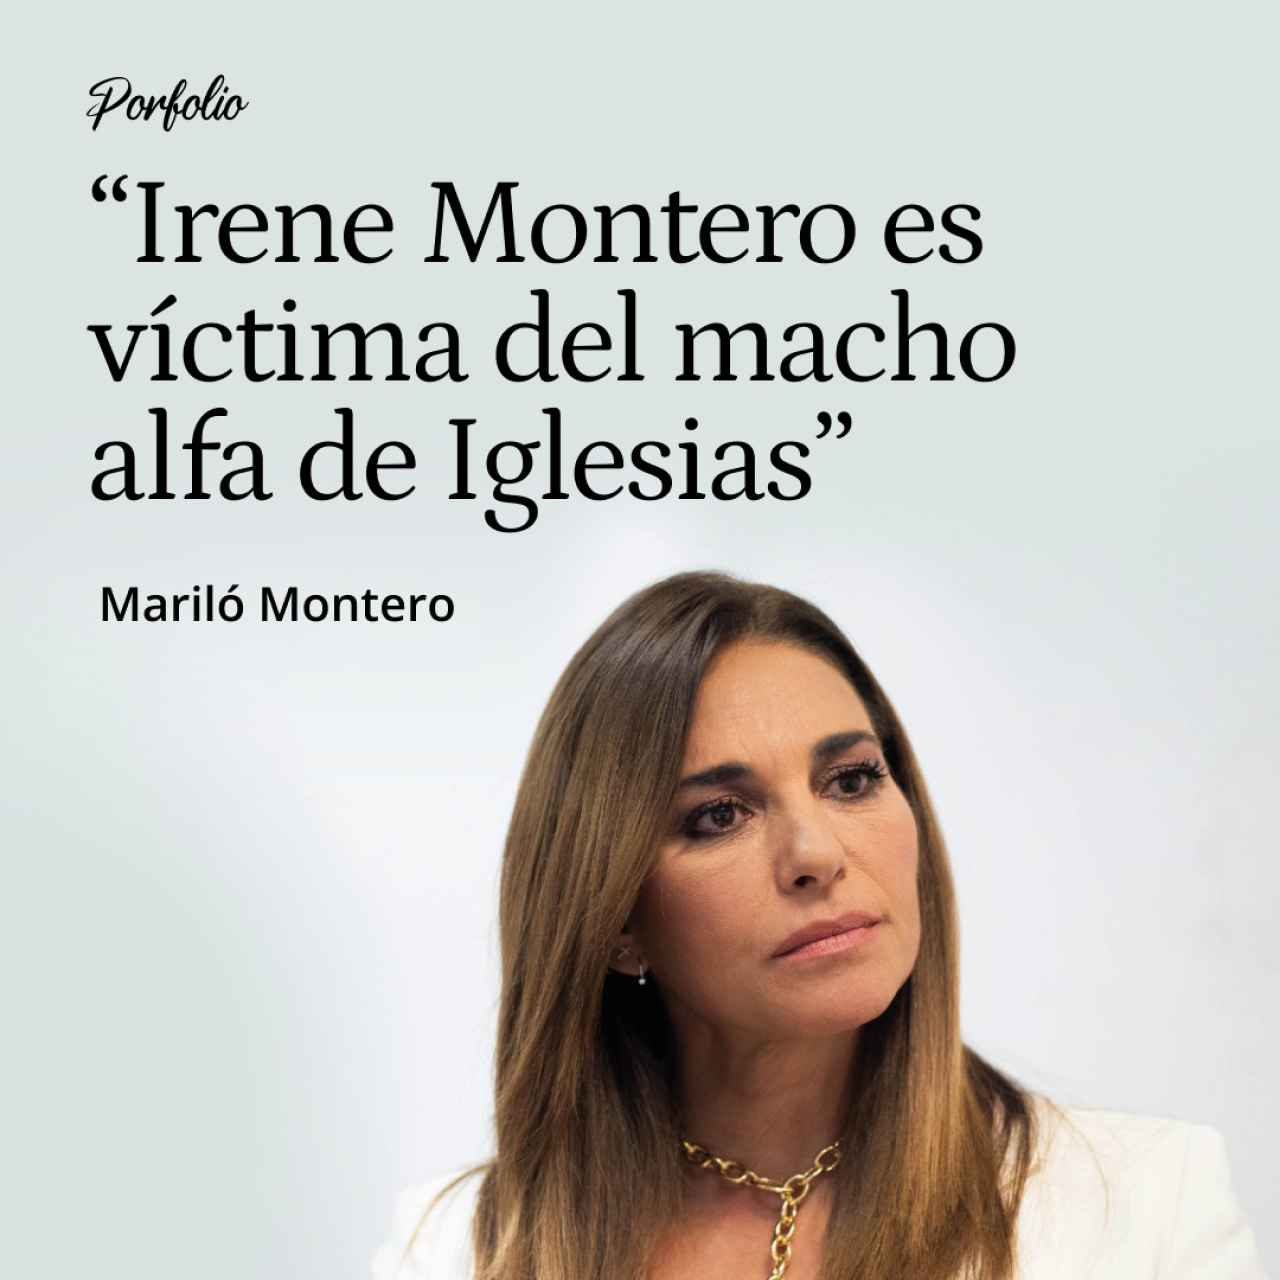 Mariló Montero: “Irene Montero es víctima del macho alfa de Iglesias: él dicta cómo debe ser una mujer perfecta y ella acata”